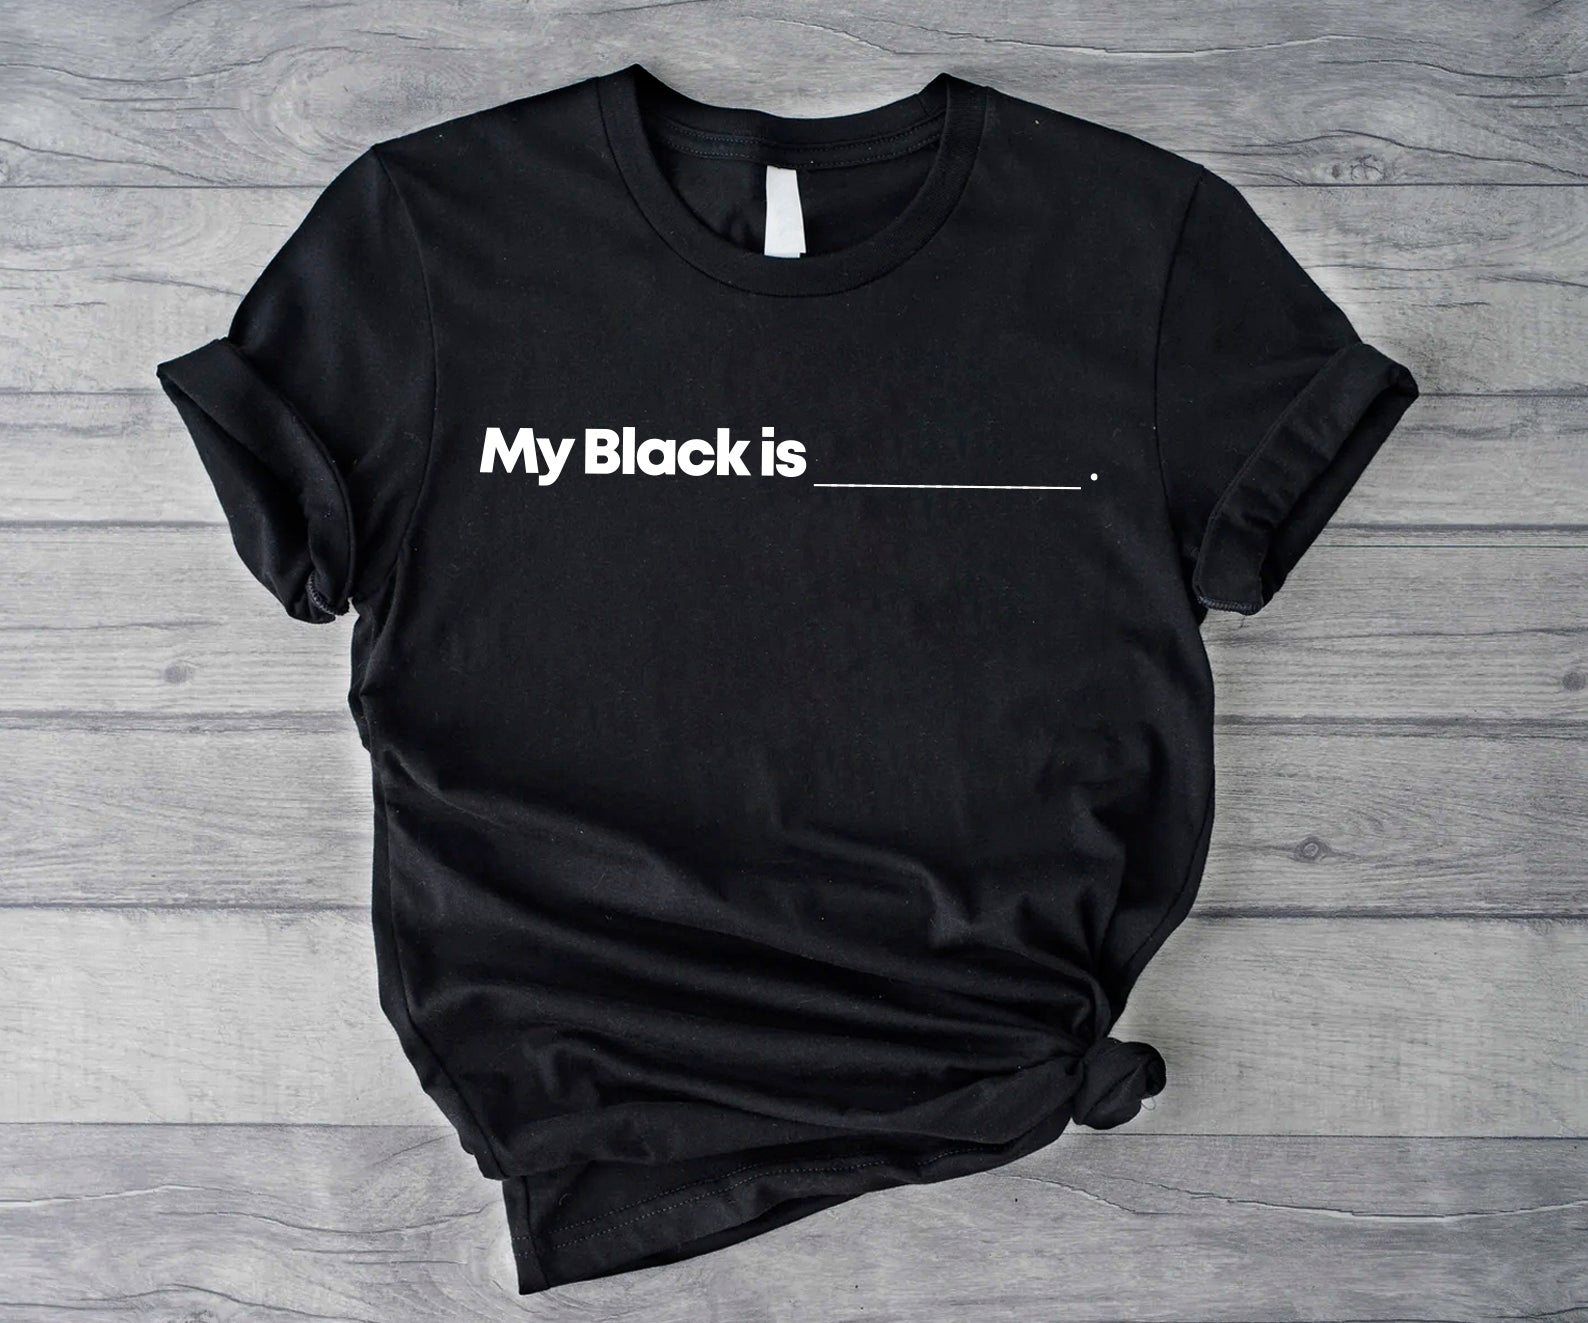 My Black is_____.